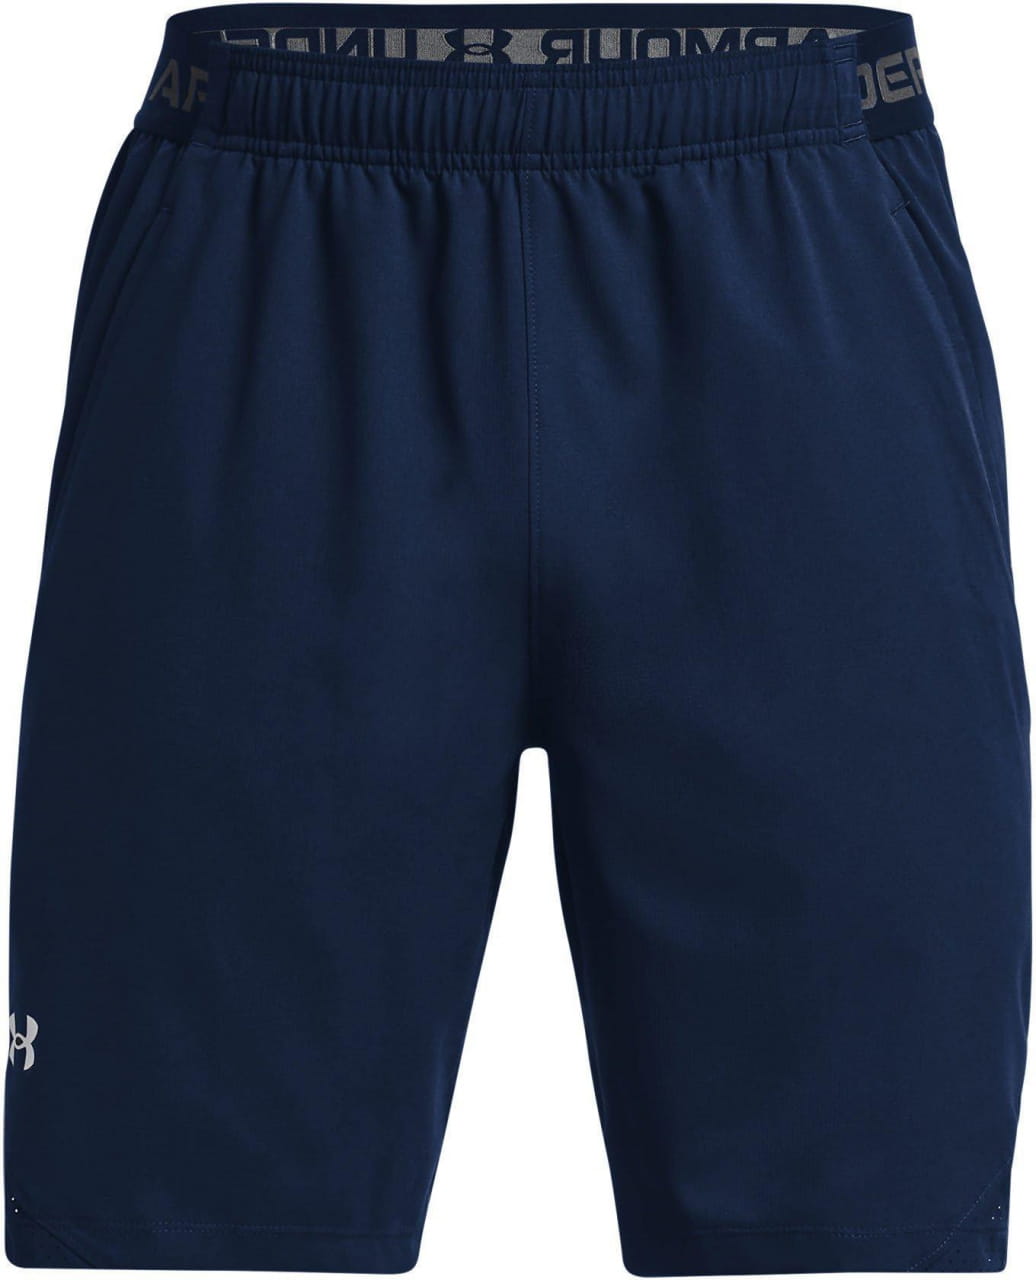 Pánske športové šortky Under Armour Vanish Woven 8in Shorts-NVY